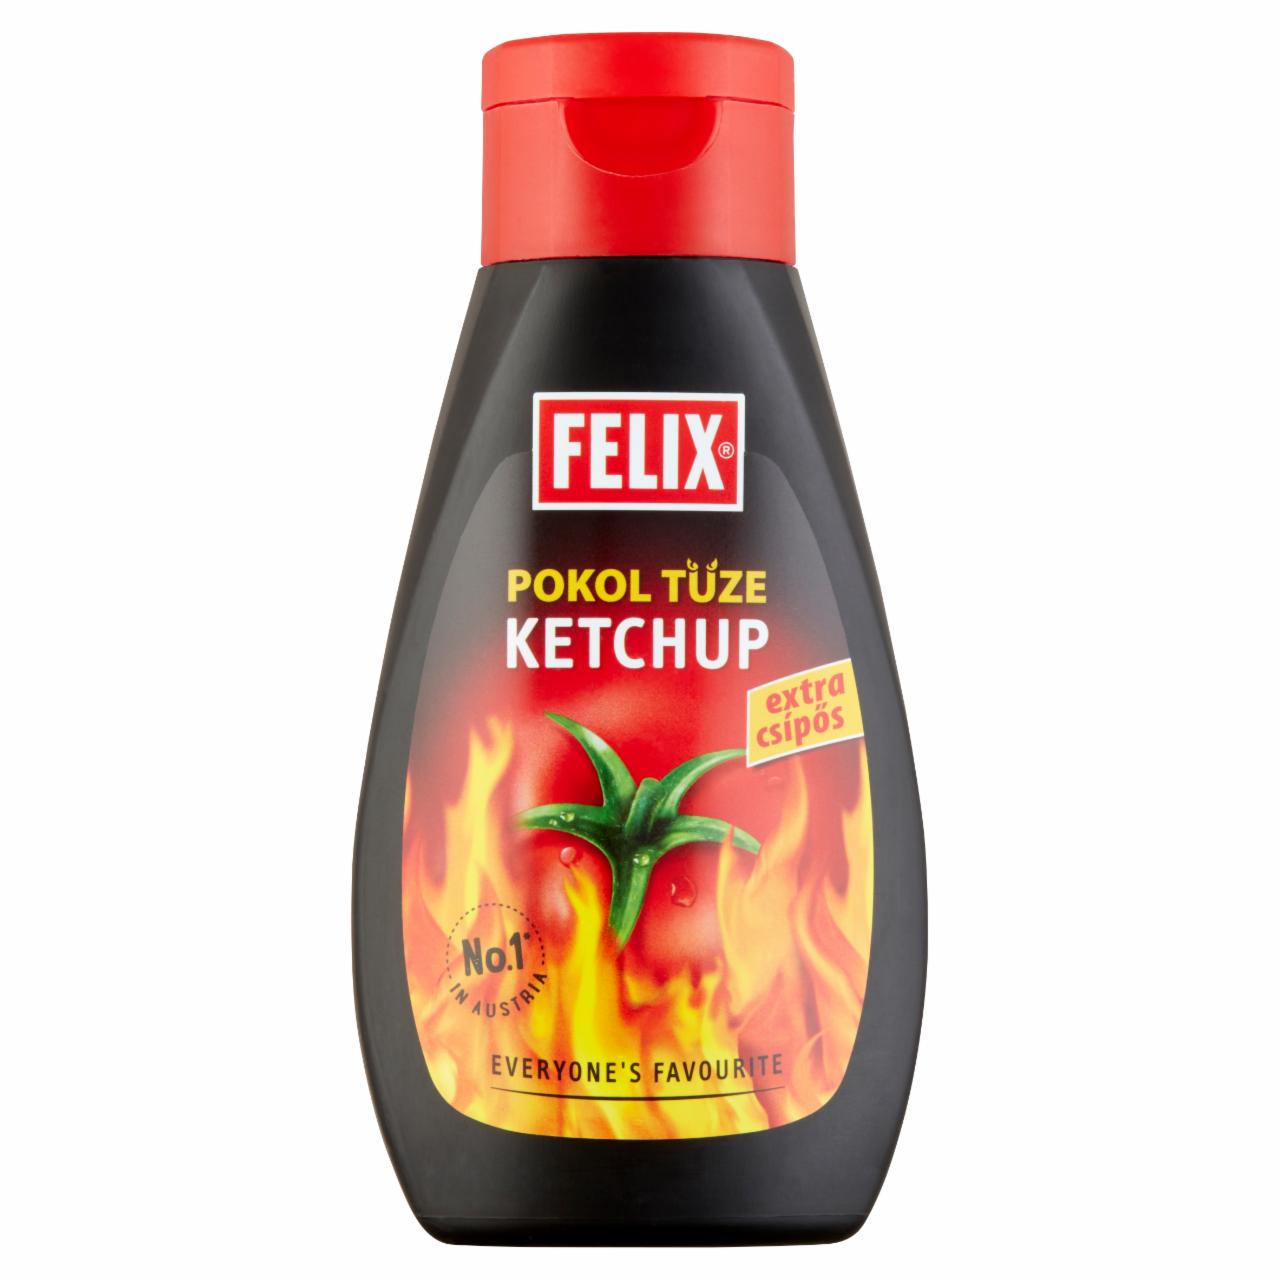 Képek - Felix Pokol Tüze extra csípős ketchup 450 g